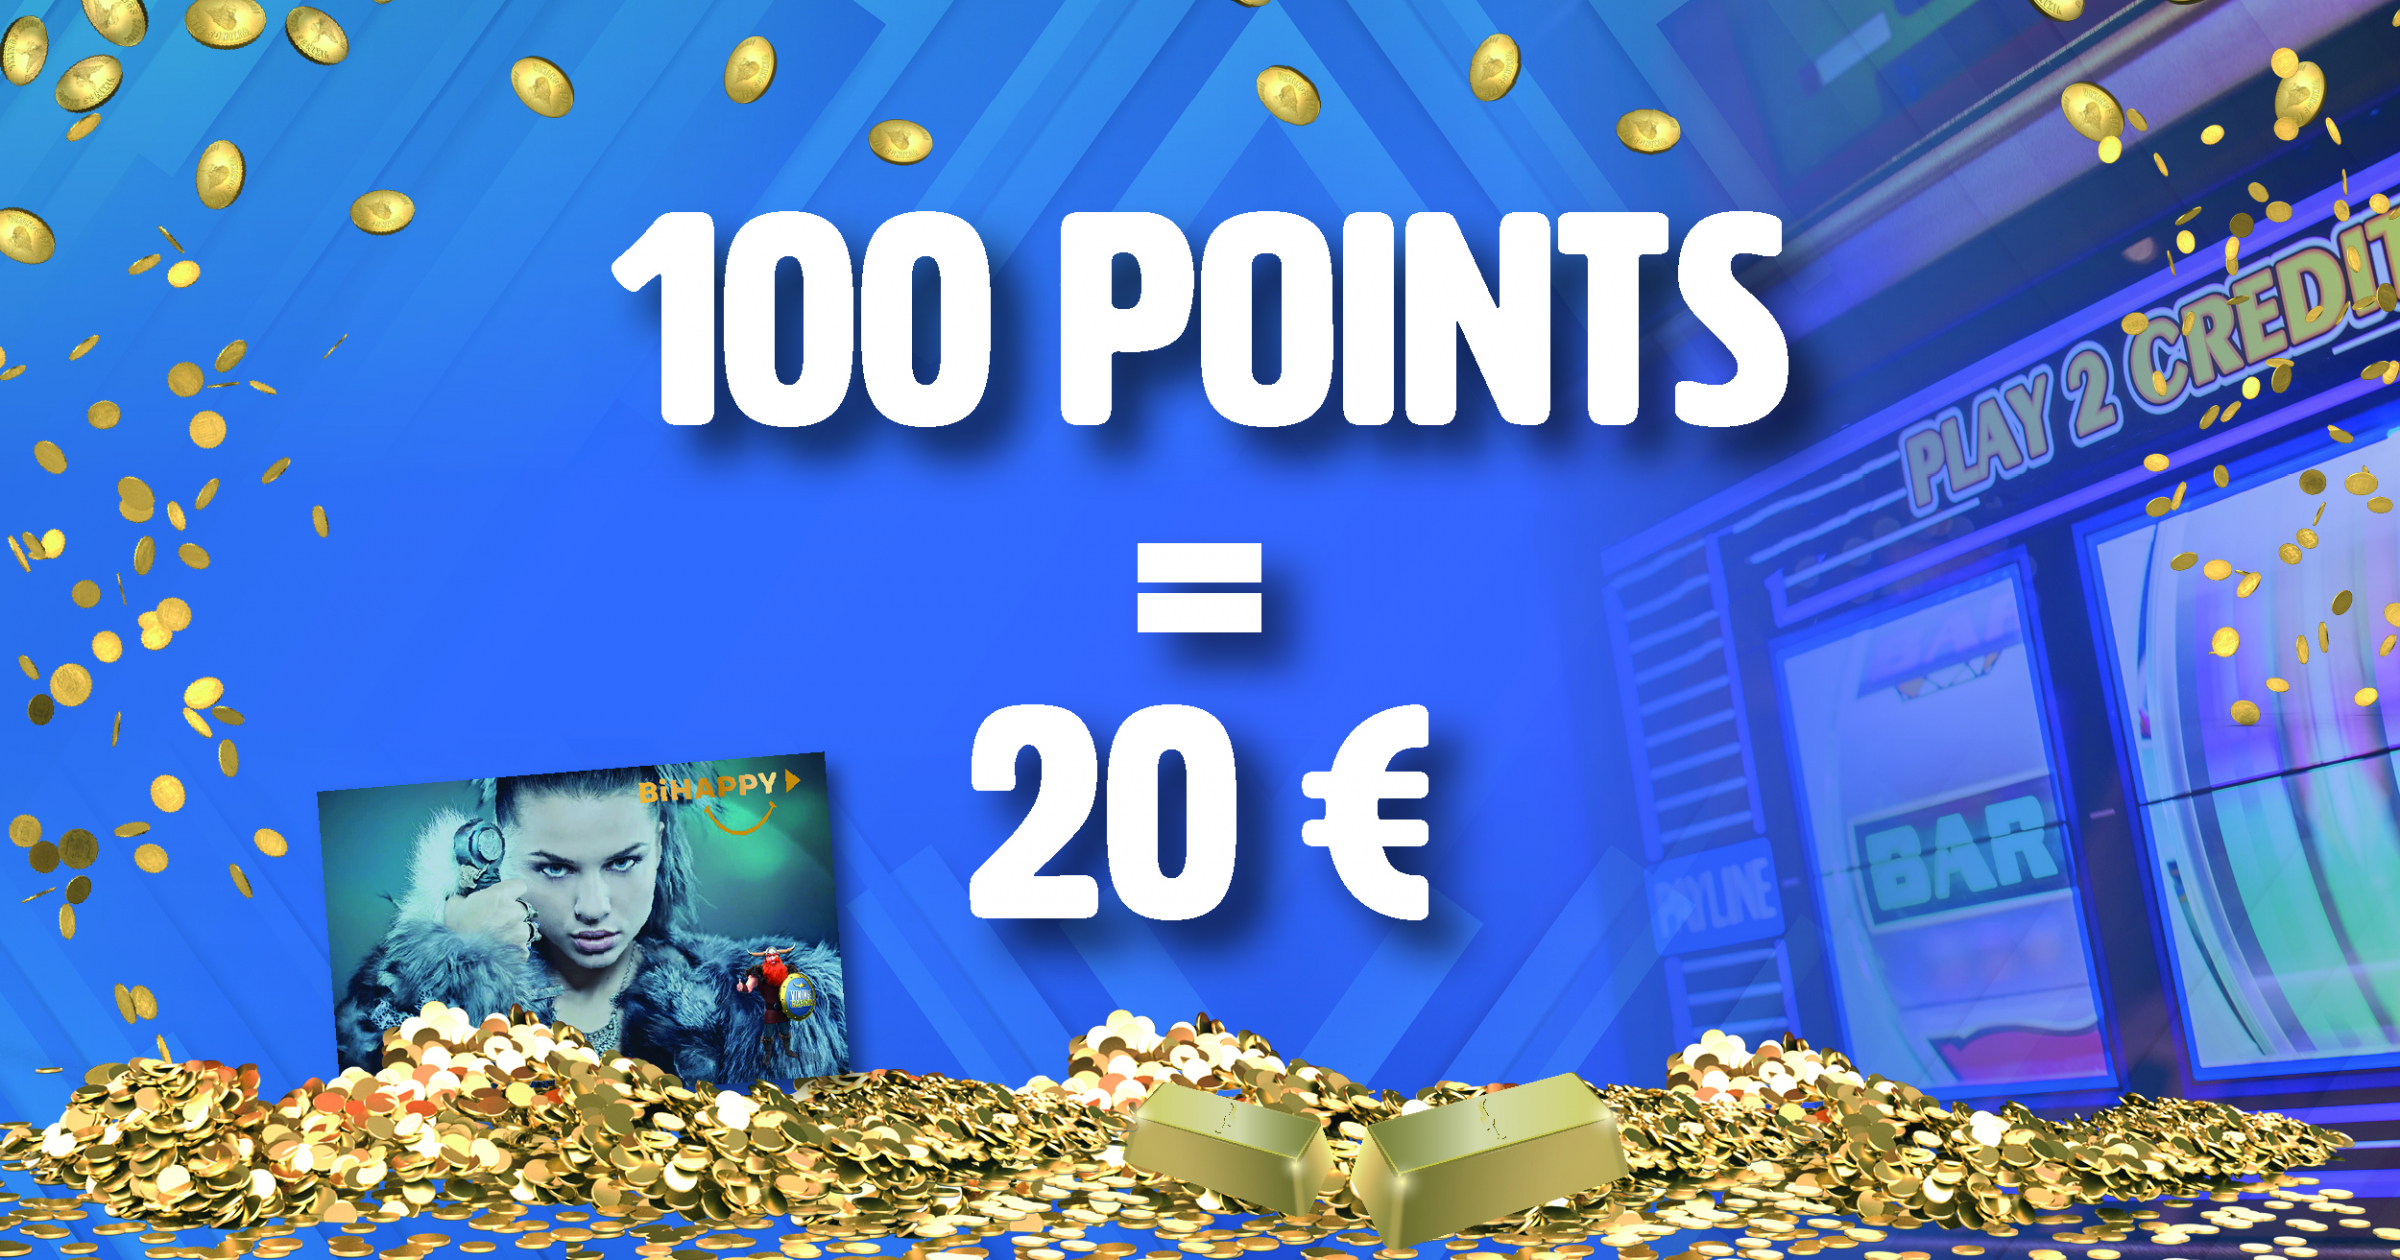 20 € Offerts en Ticket de jeu dès 100 points collectés